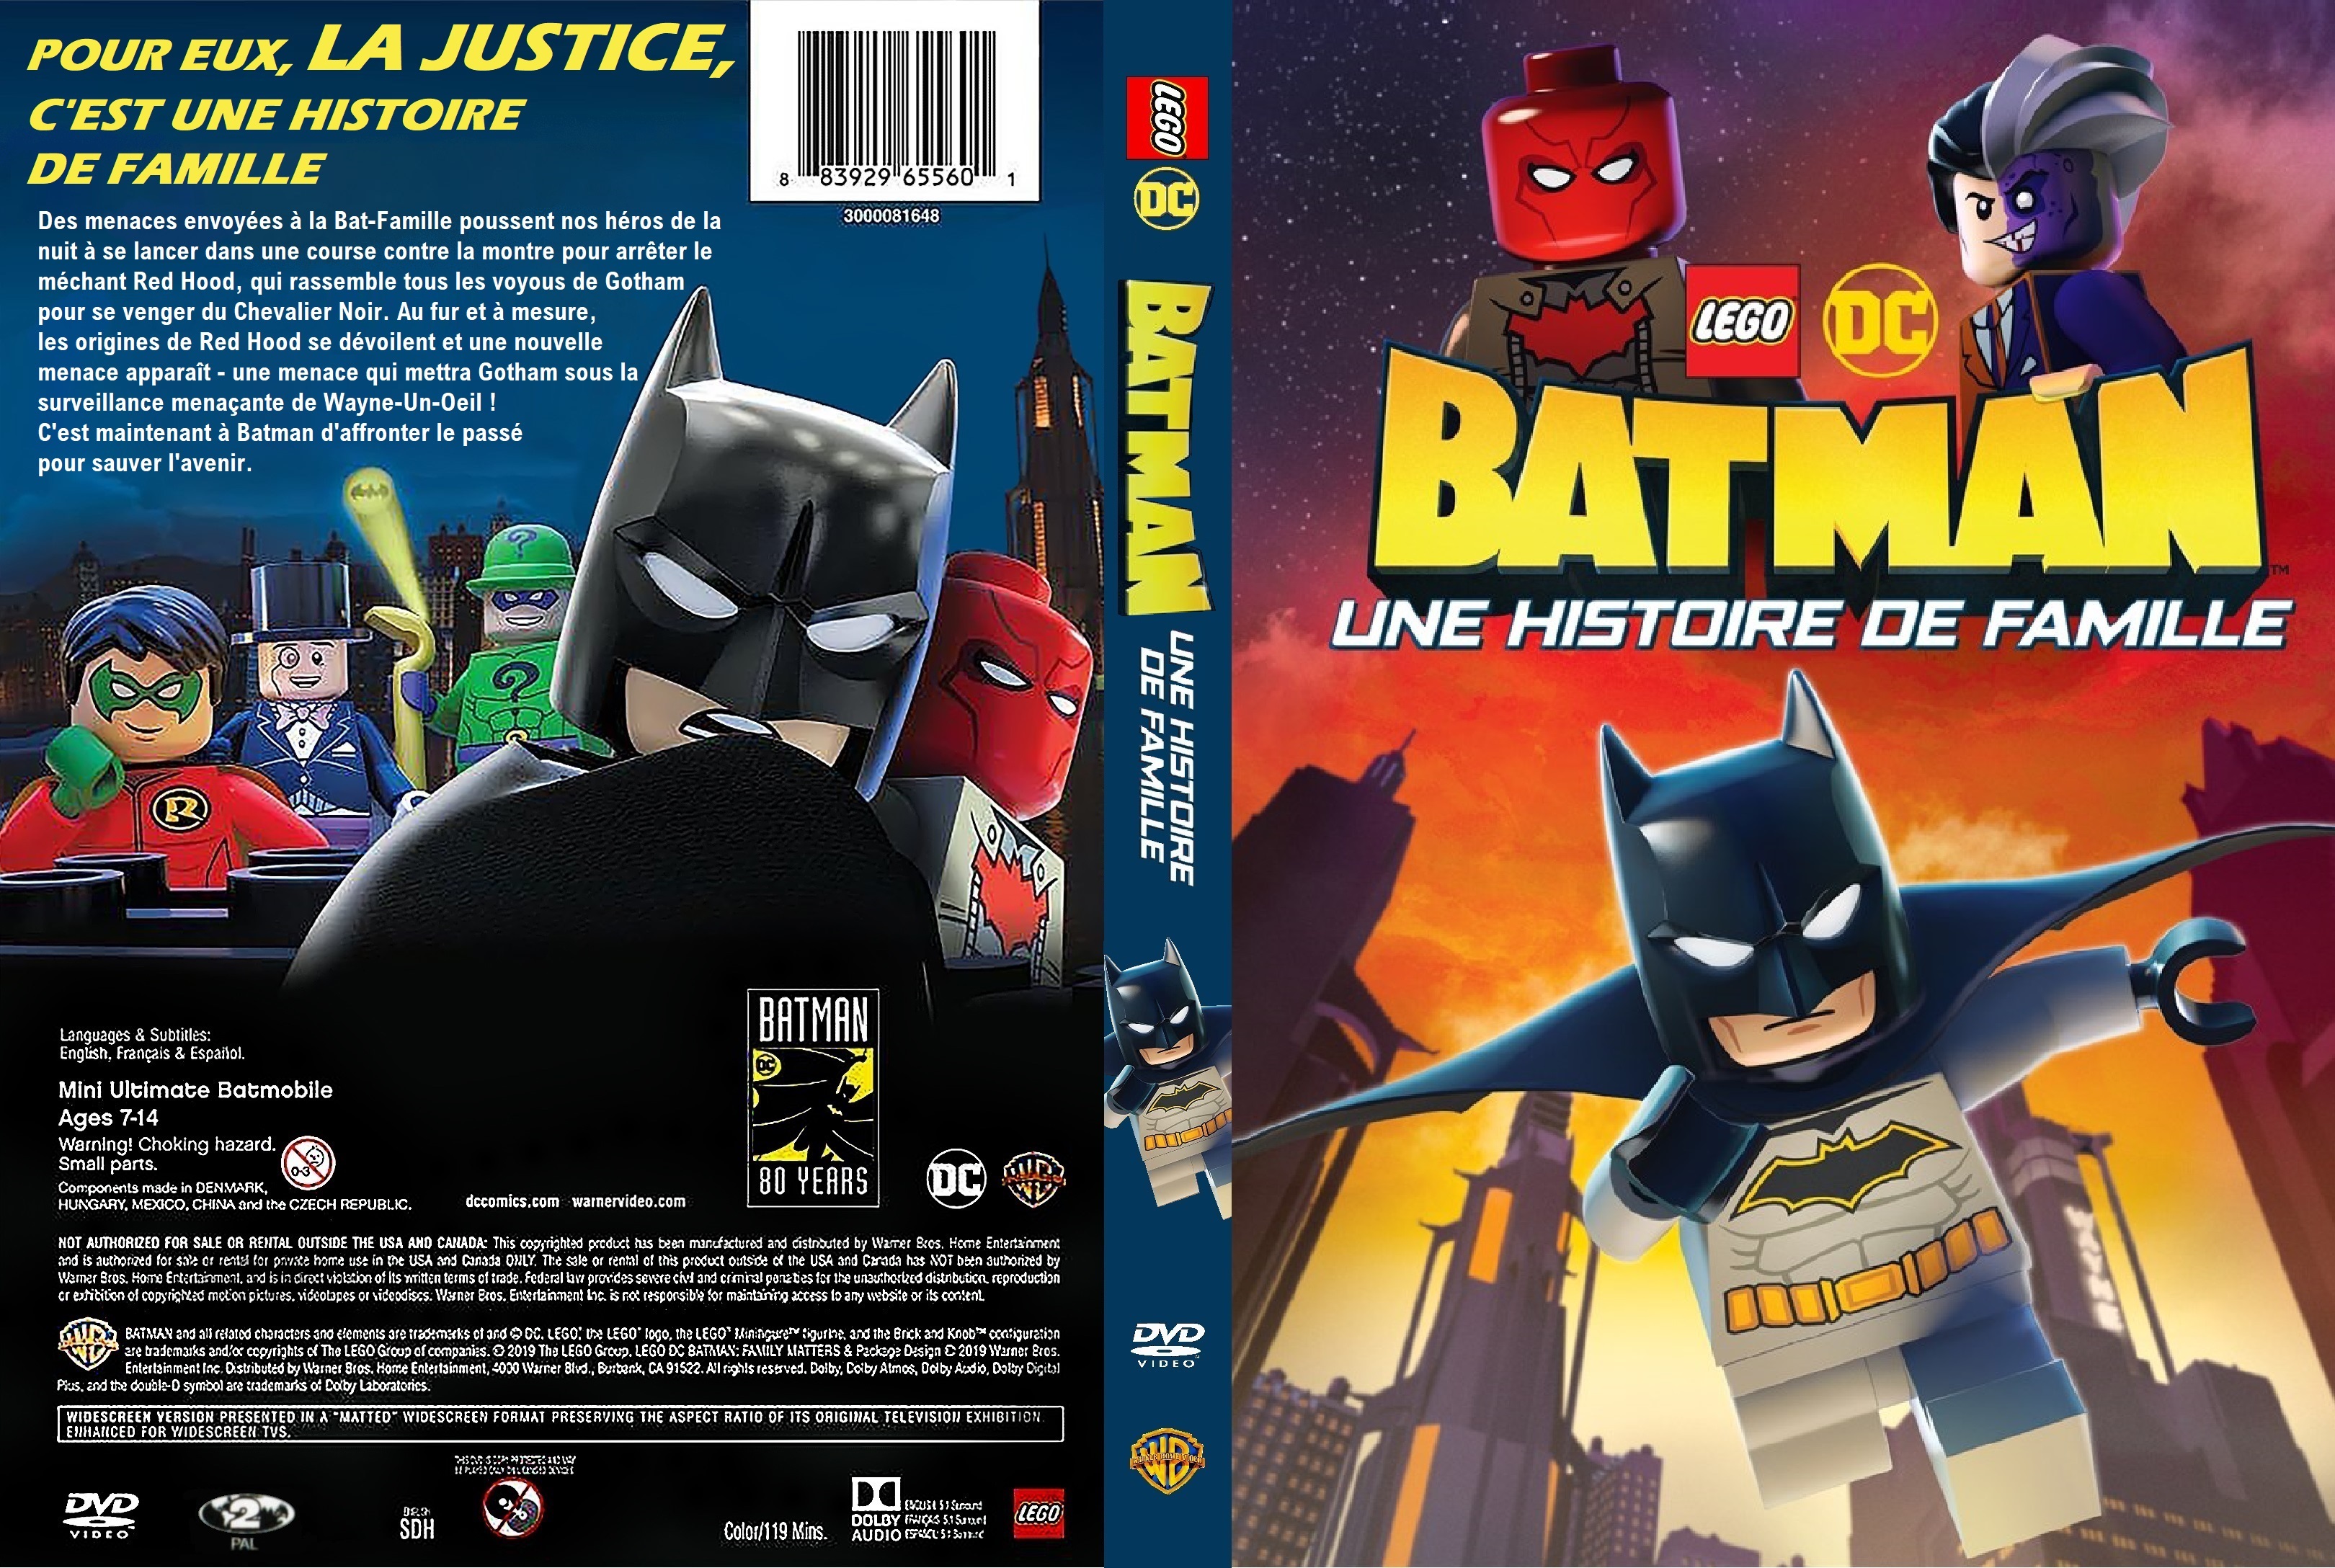 Jaquette DVD LEGO DC Batman Une Histoire de Famille custom